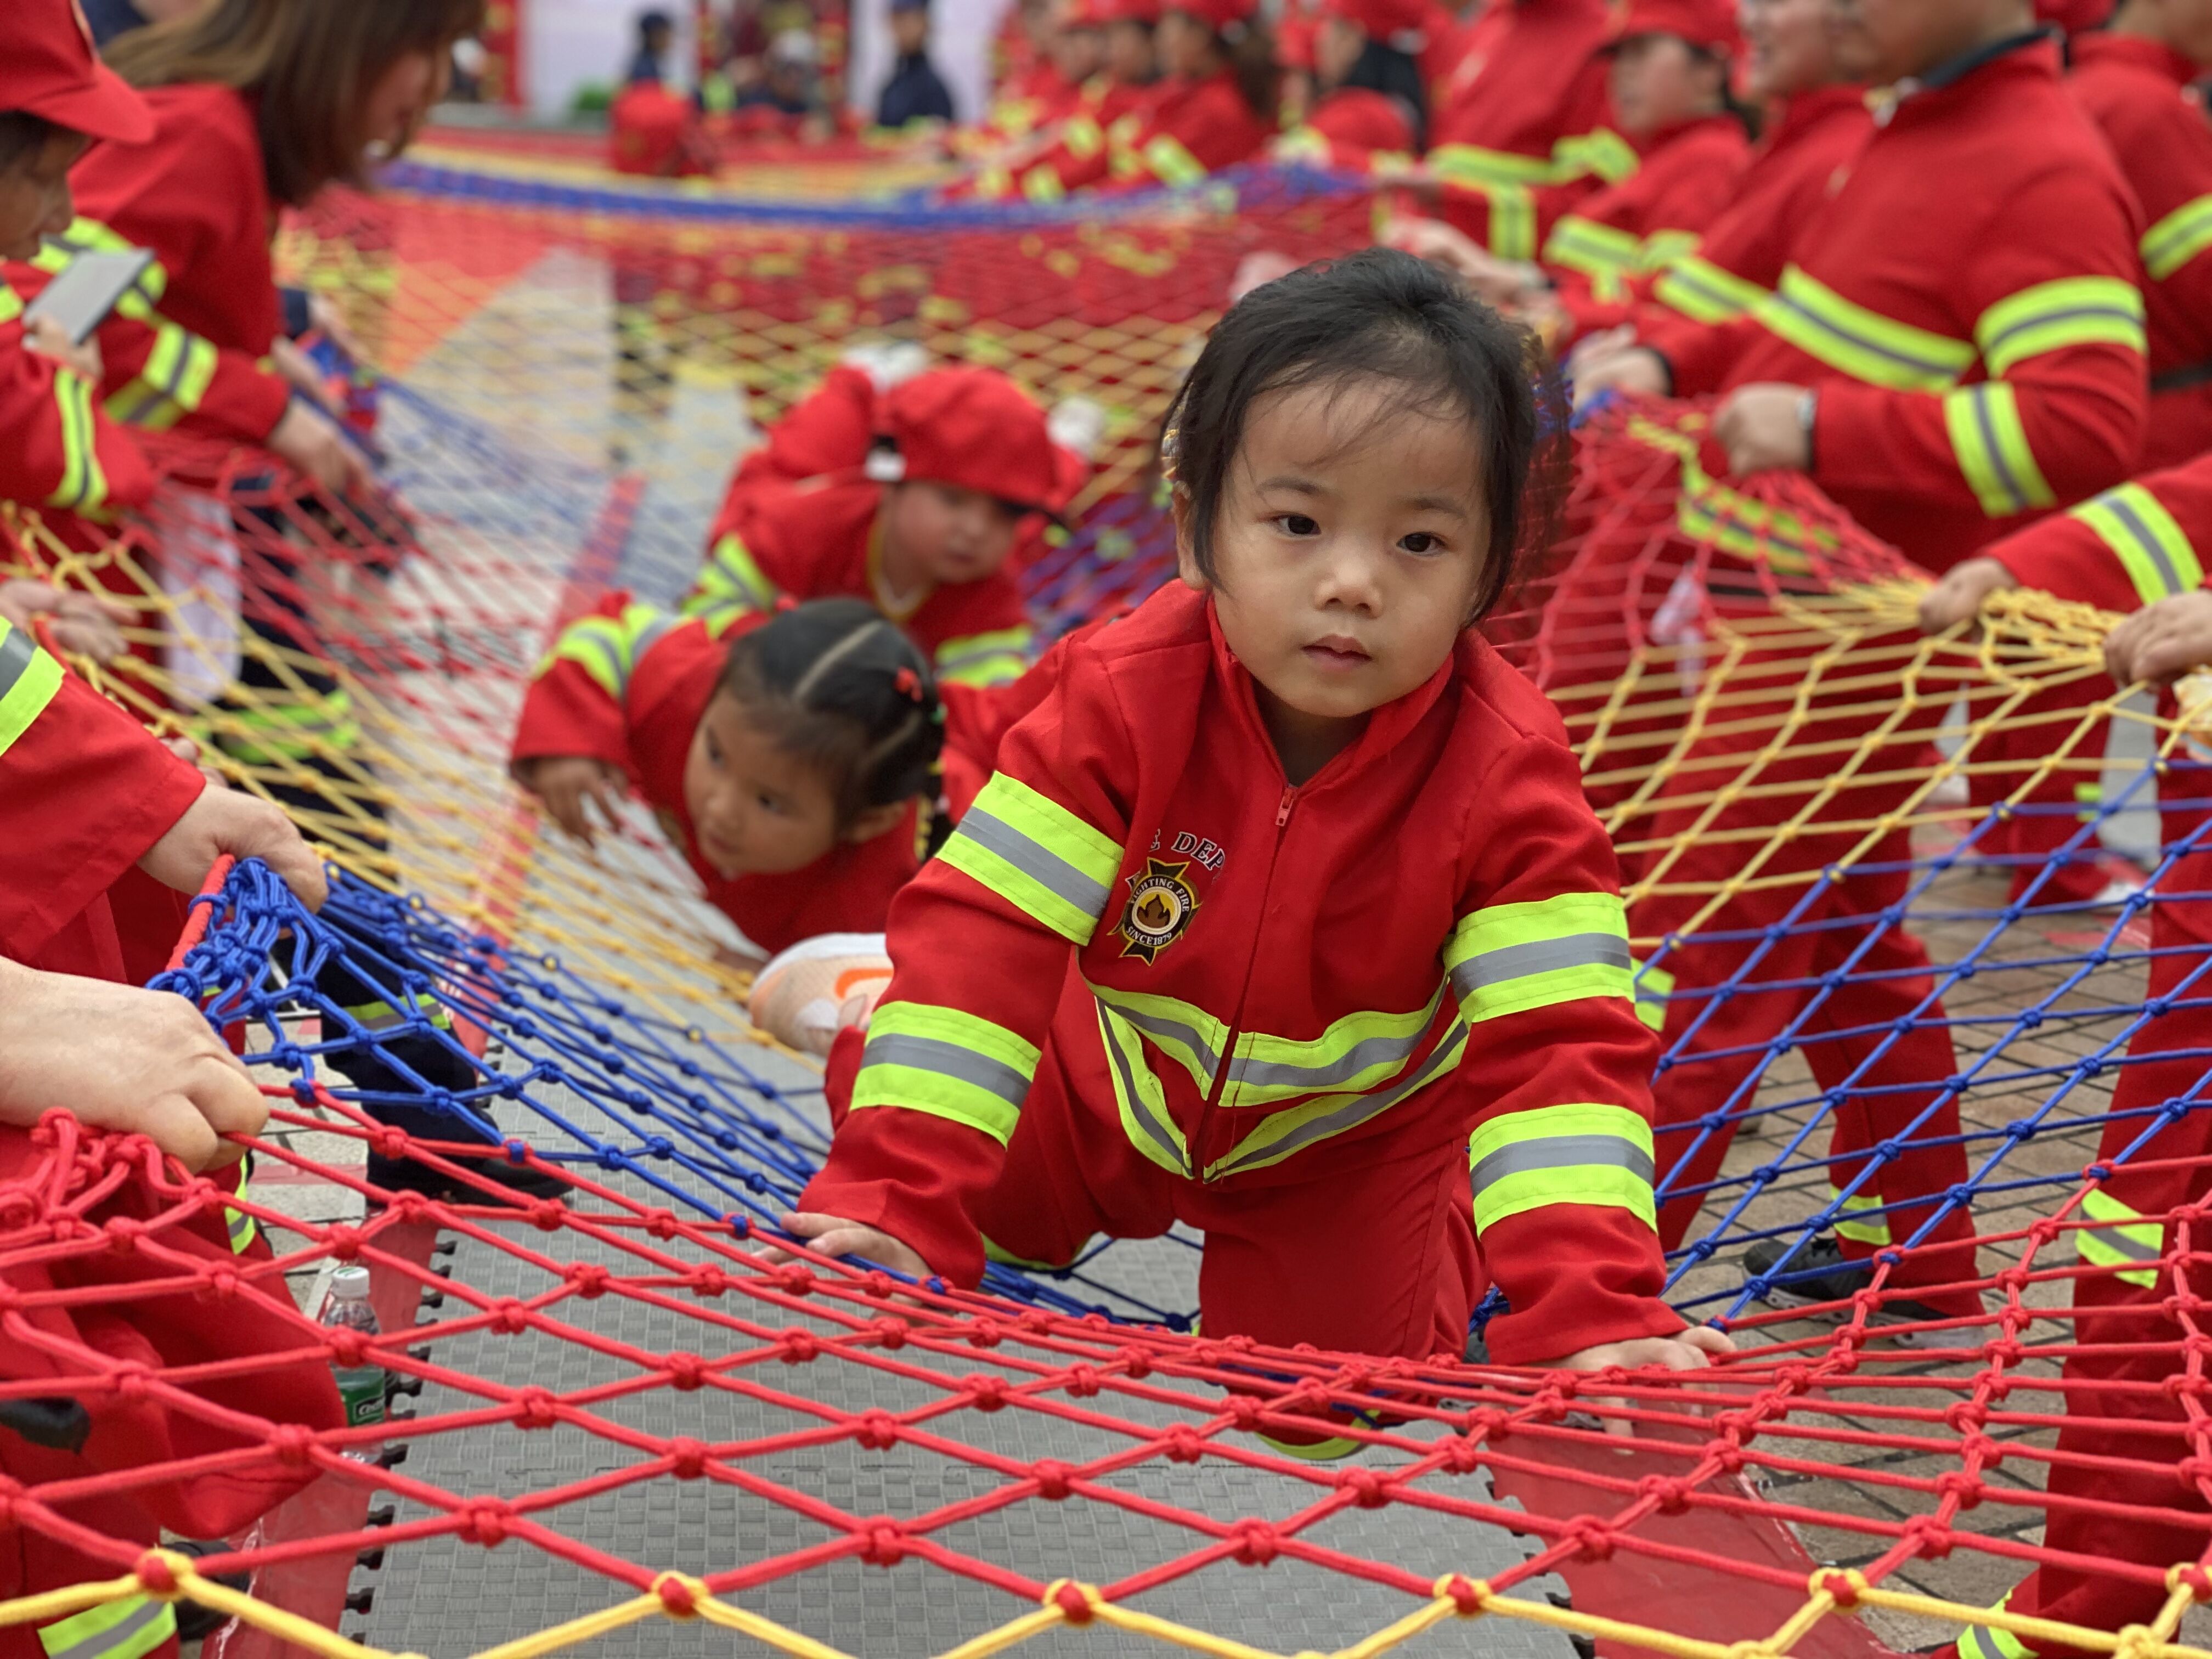 遂宁市近300人共同参与“消防总动员”安全教育亲子体验活动